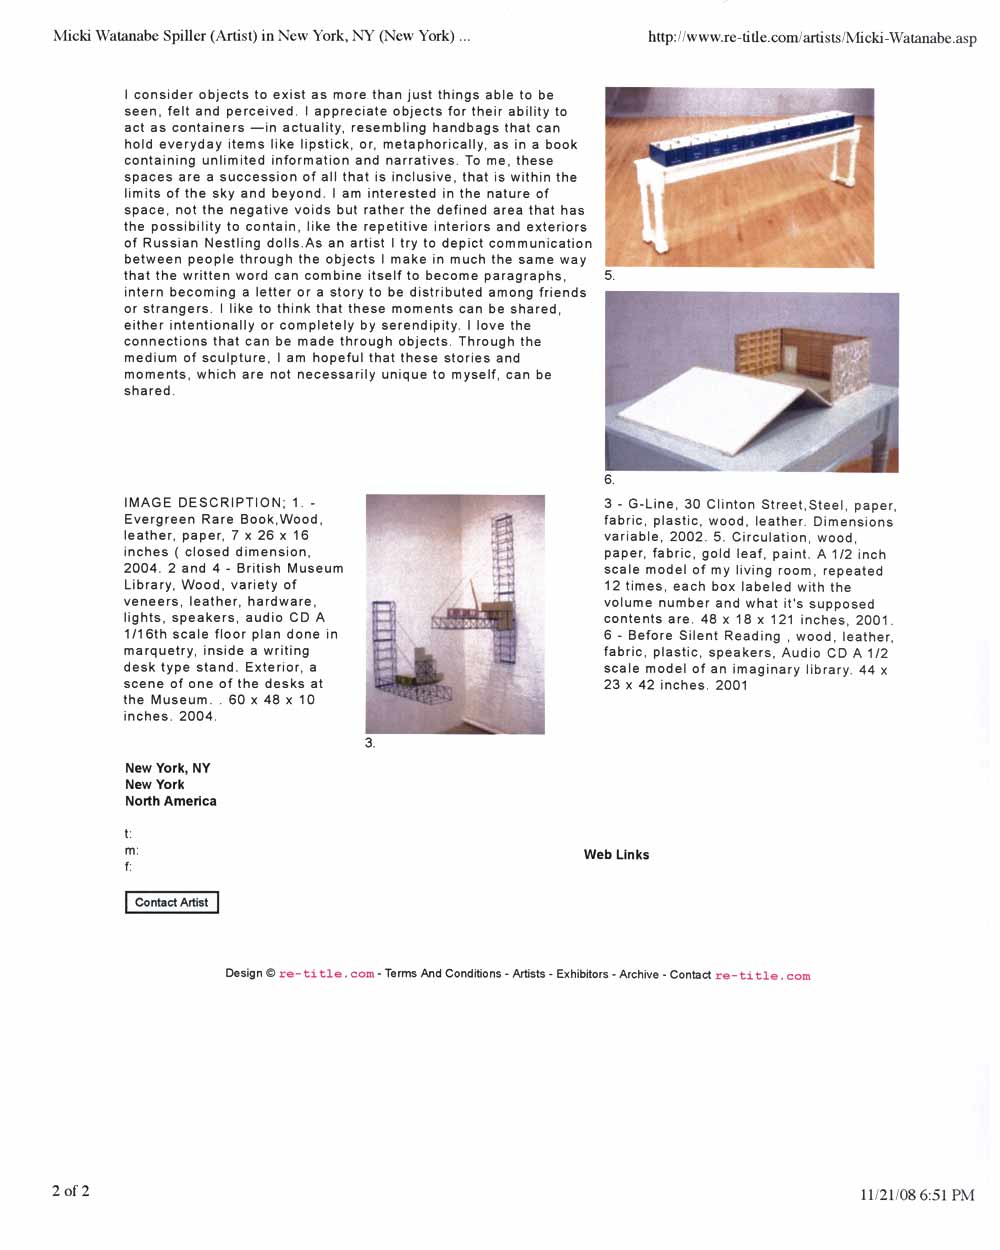 Micki Watanabe Spiller's Artist Biography, pg 2